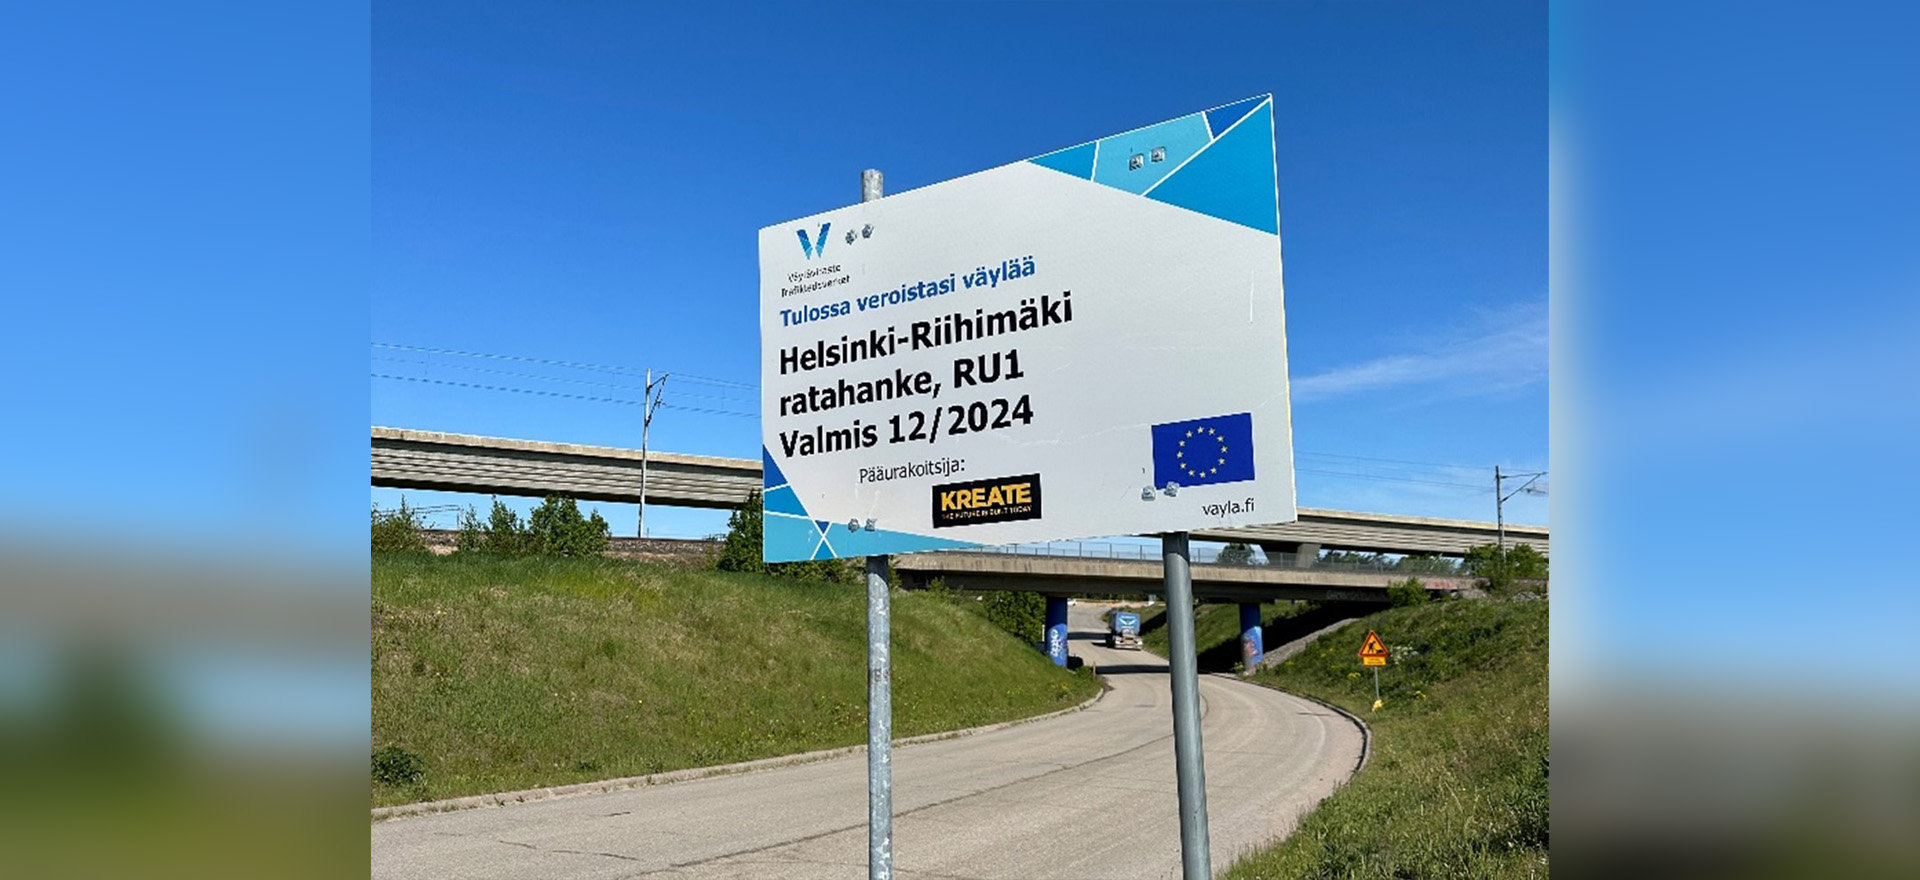 Helsinki-Riihimäki-ratahankkeen työmaataulu, jossa myös maininta EU-tuesta.